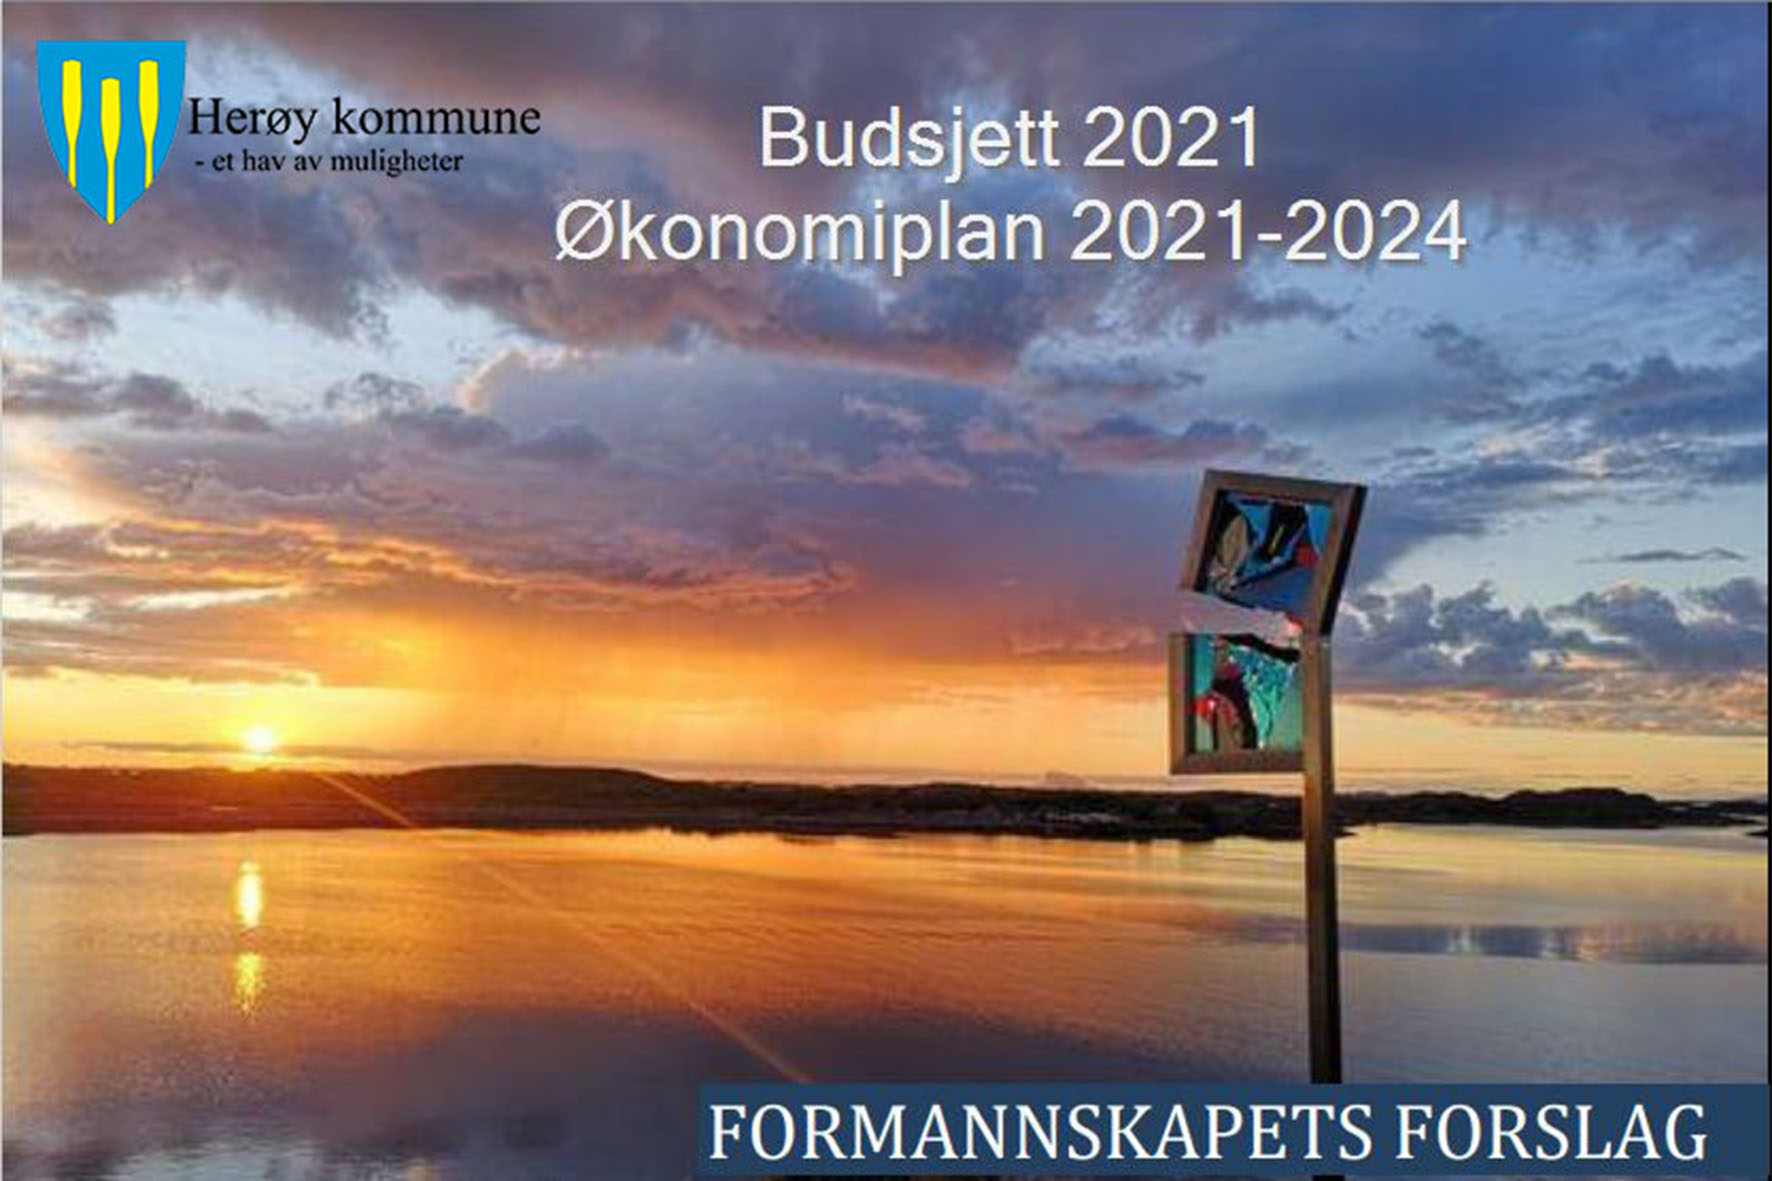 Budsjett 2021 og økomiplan 2021-2024